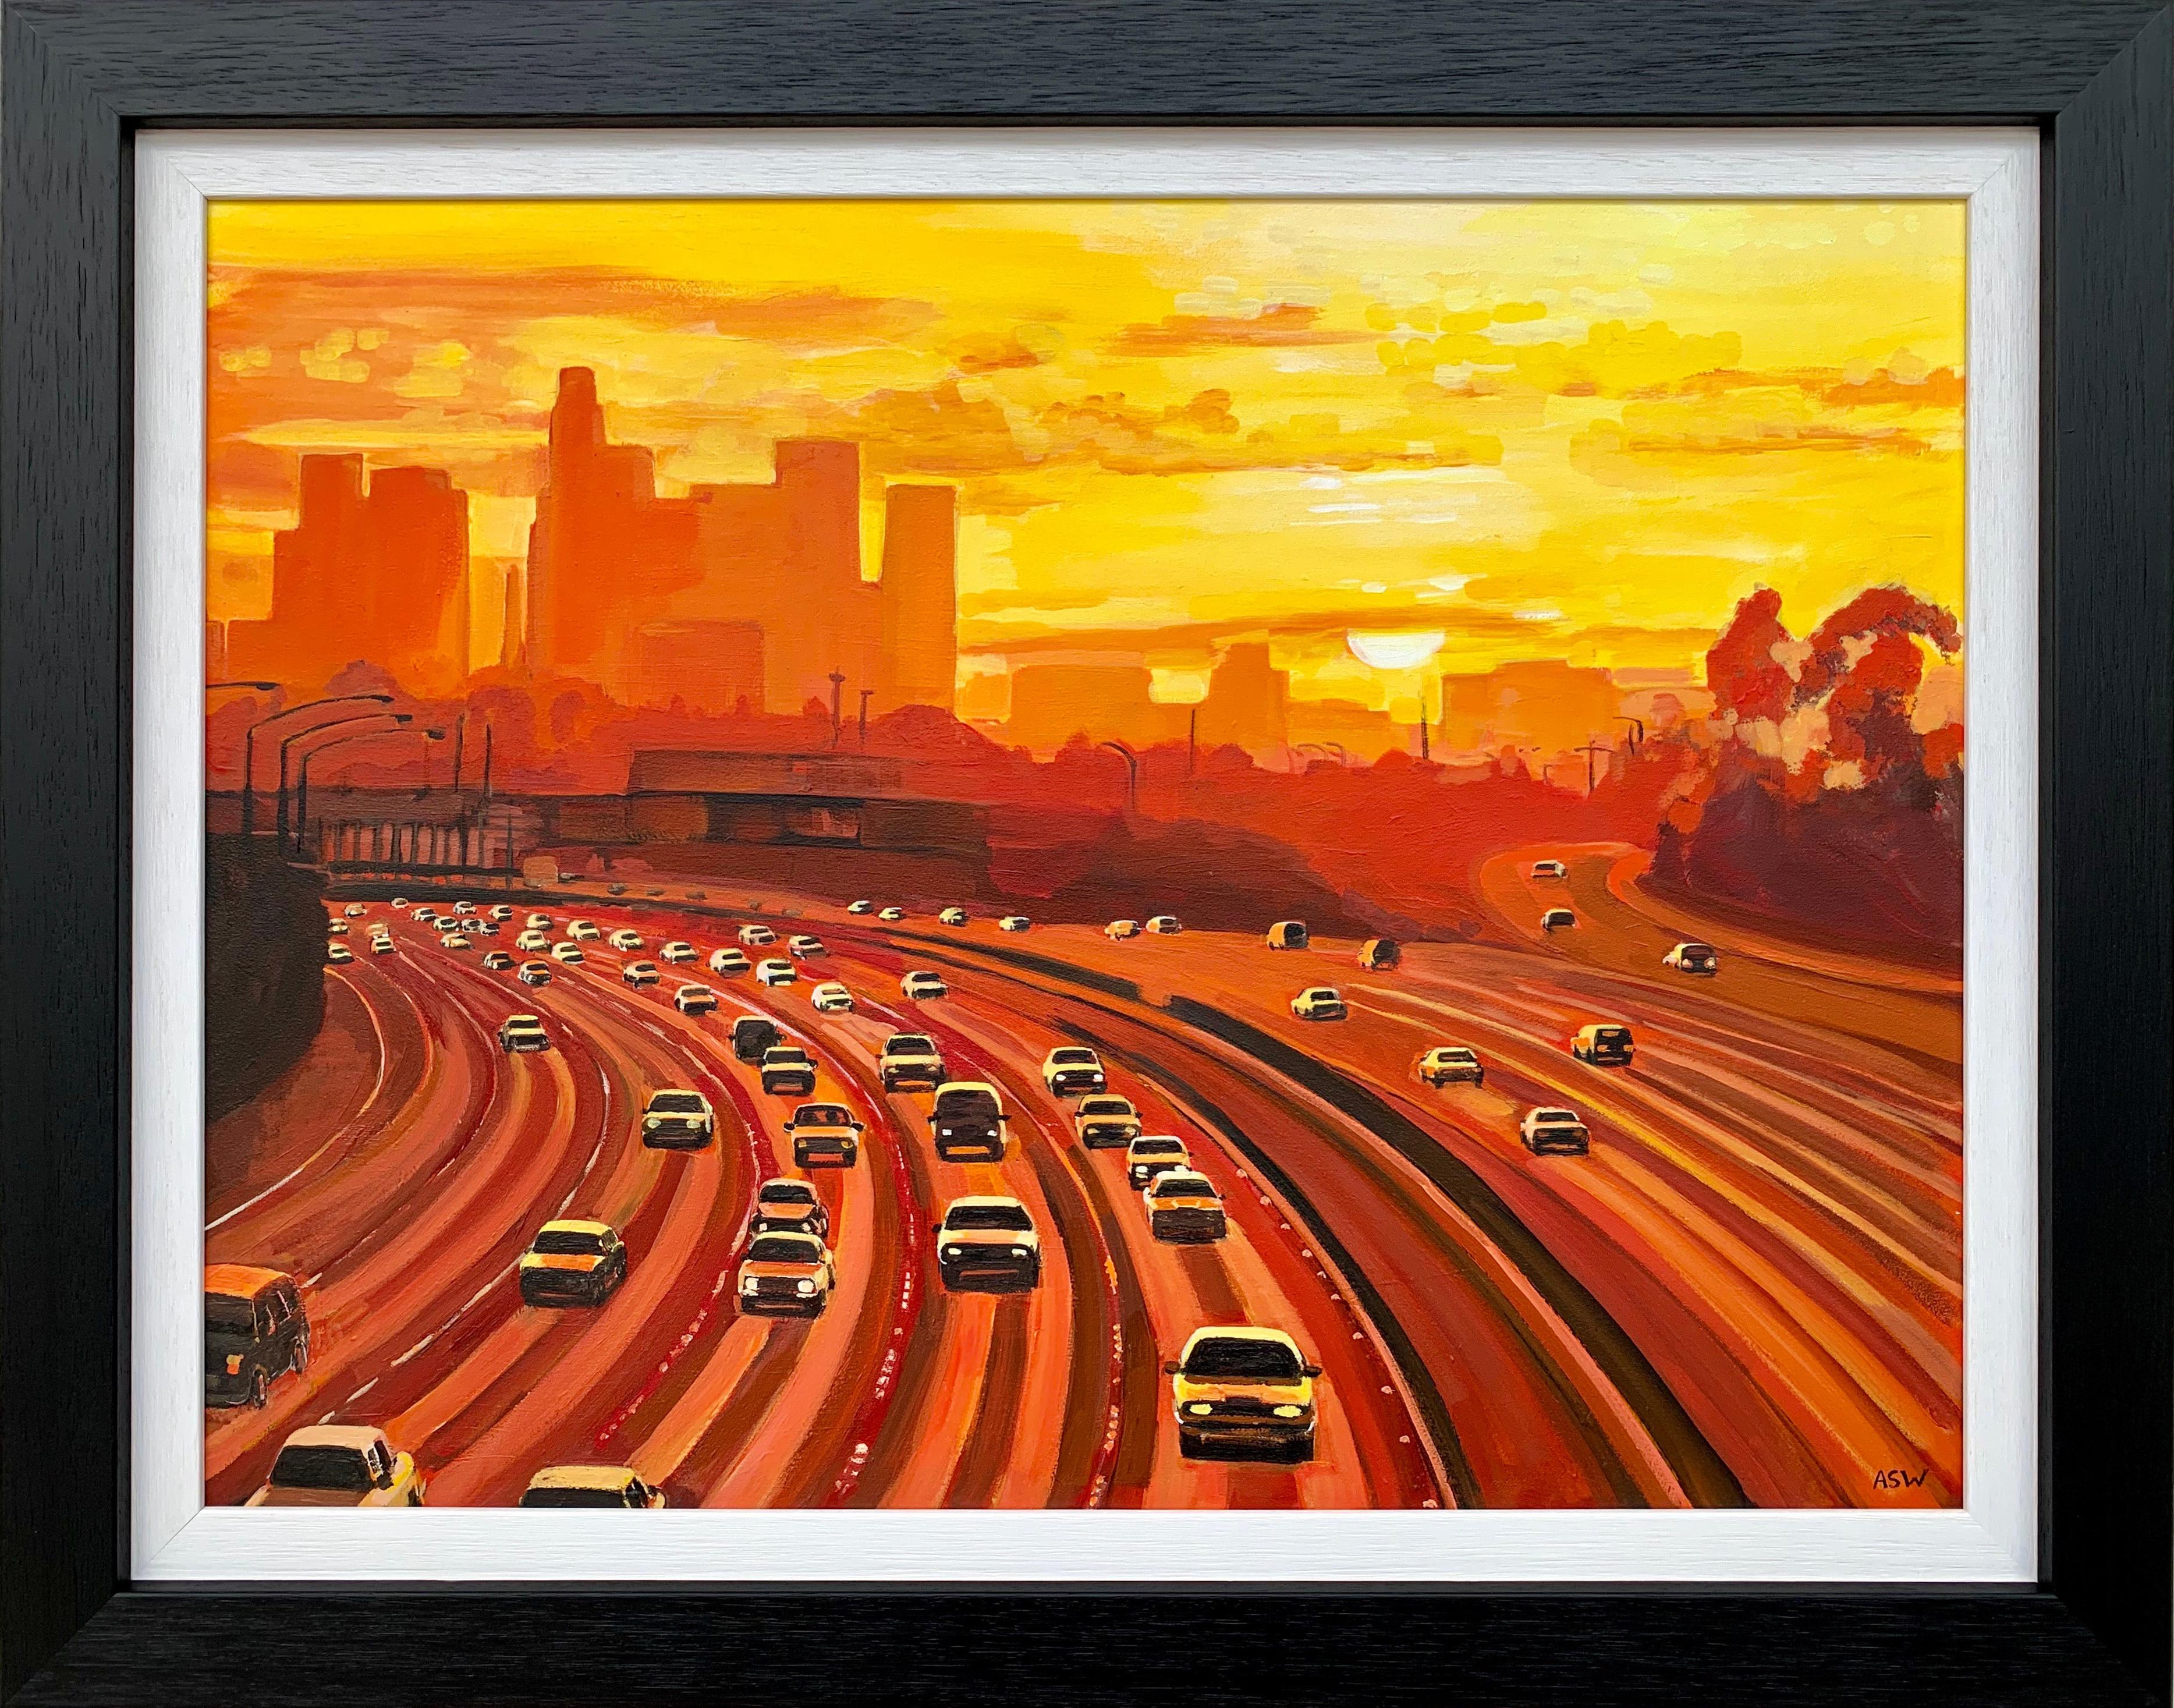 Angela Wakefield Landscape Painting – Gemälde der Los Angeles Highway Sunset Kalifornien von einem britischen Sammlerstück